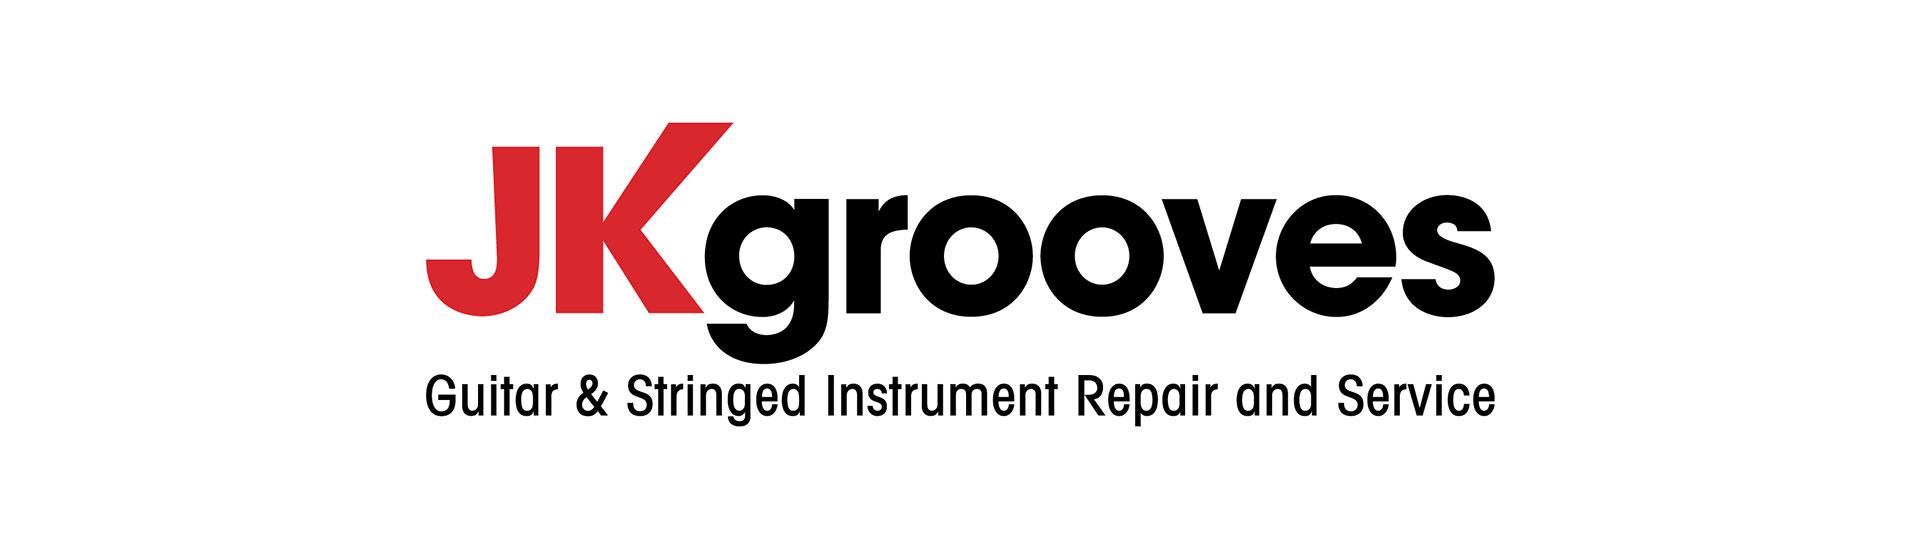 JK Grooves Logo Design